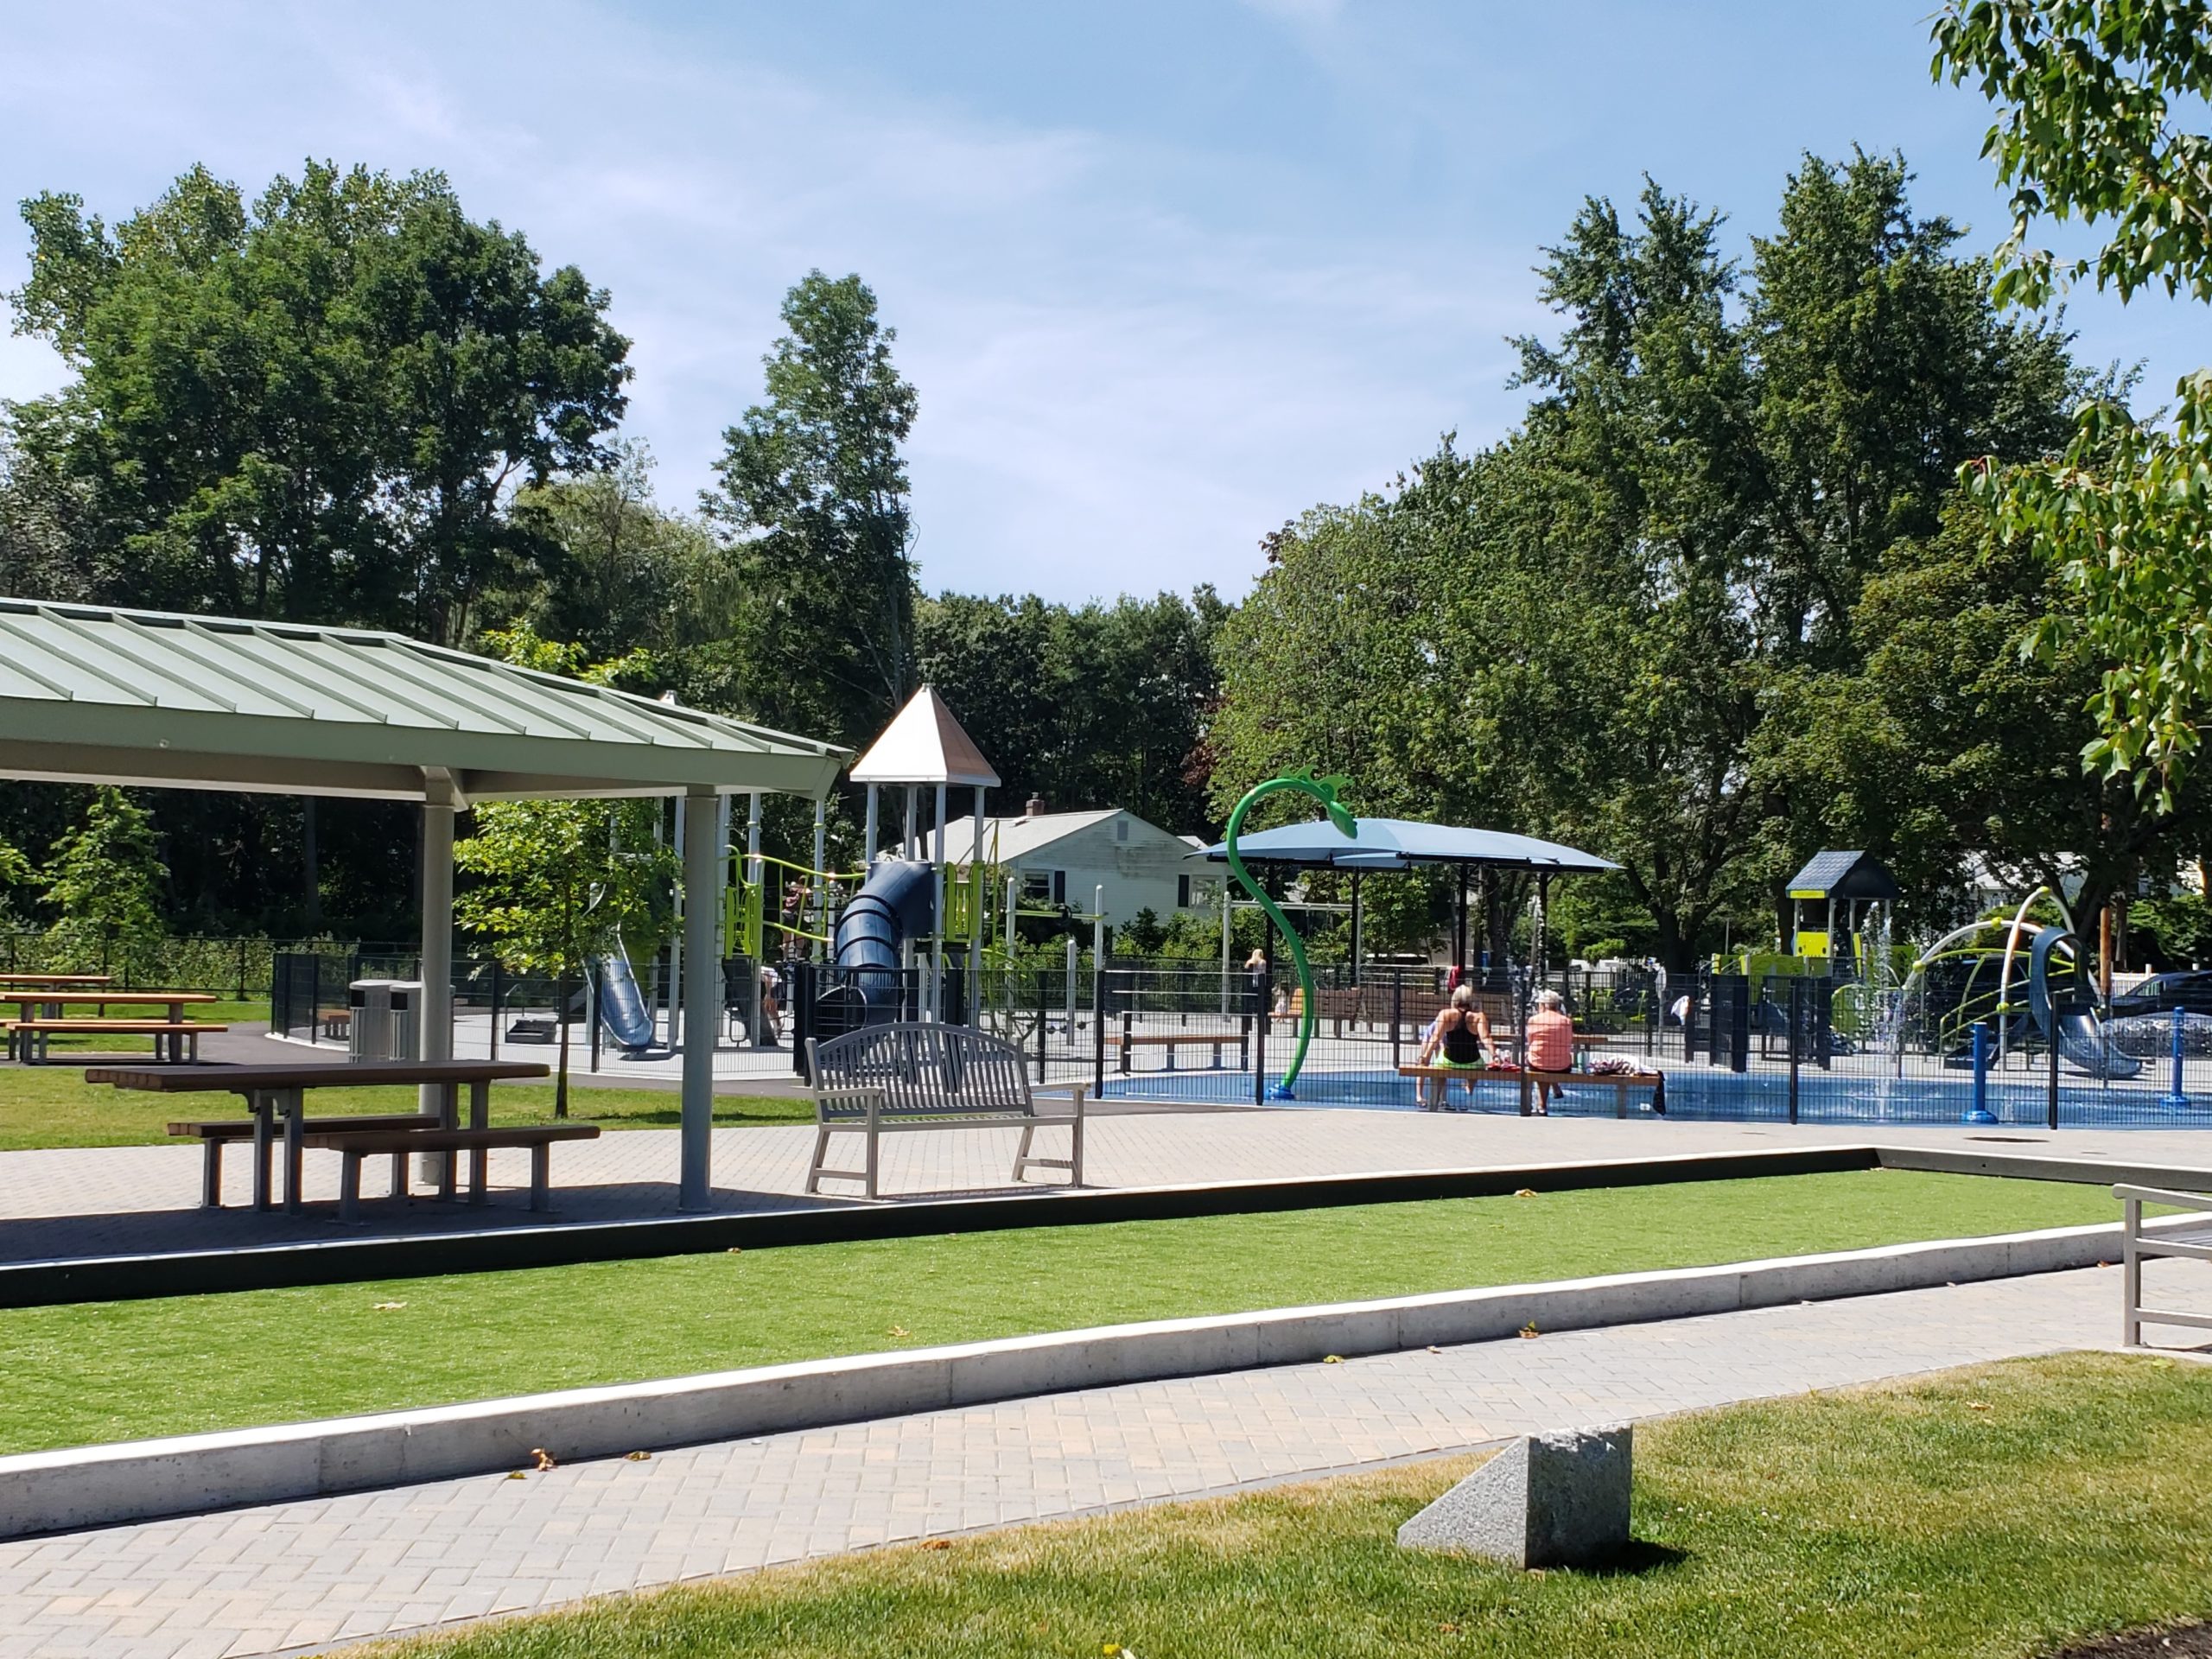 Graverson Park Waltham Massachusetts Landscape Structures playground Poligon Pavilion